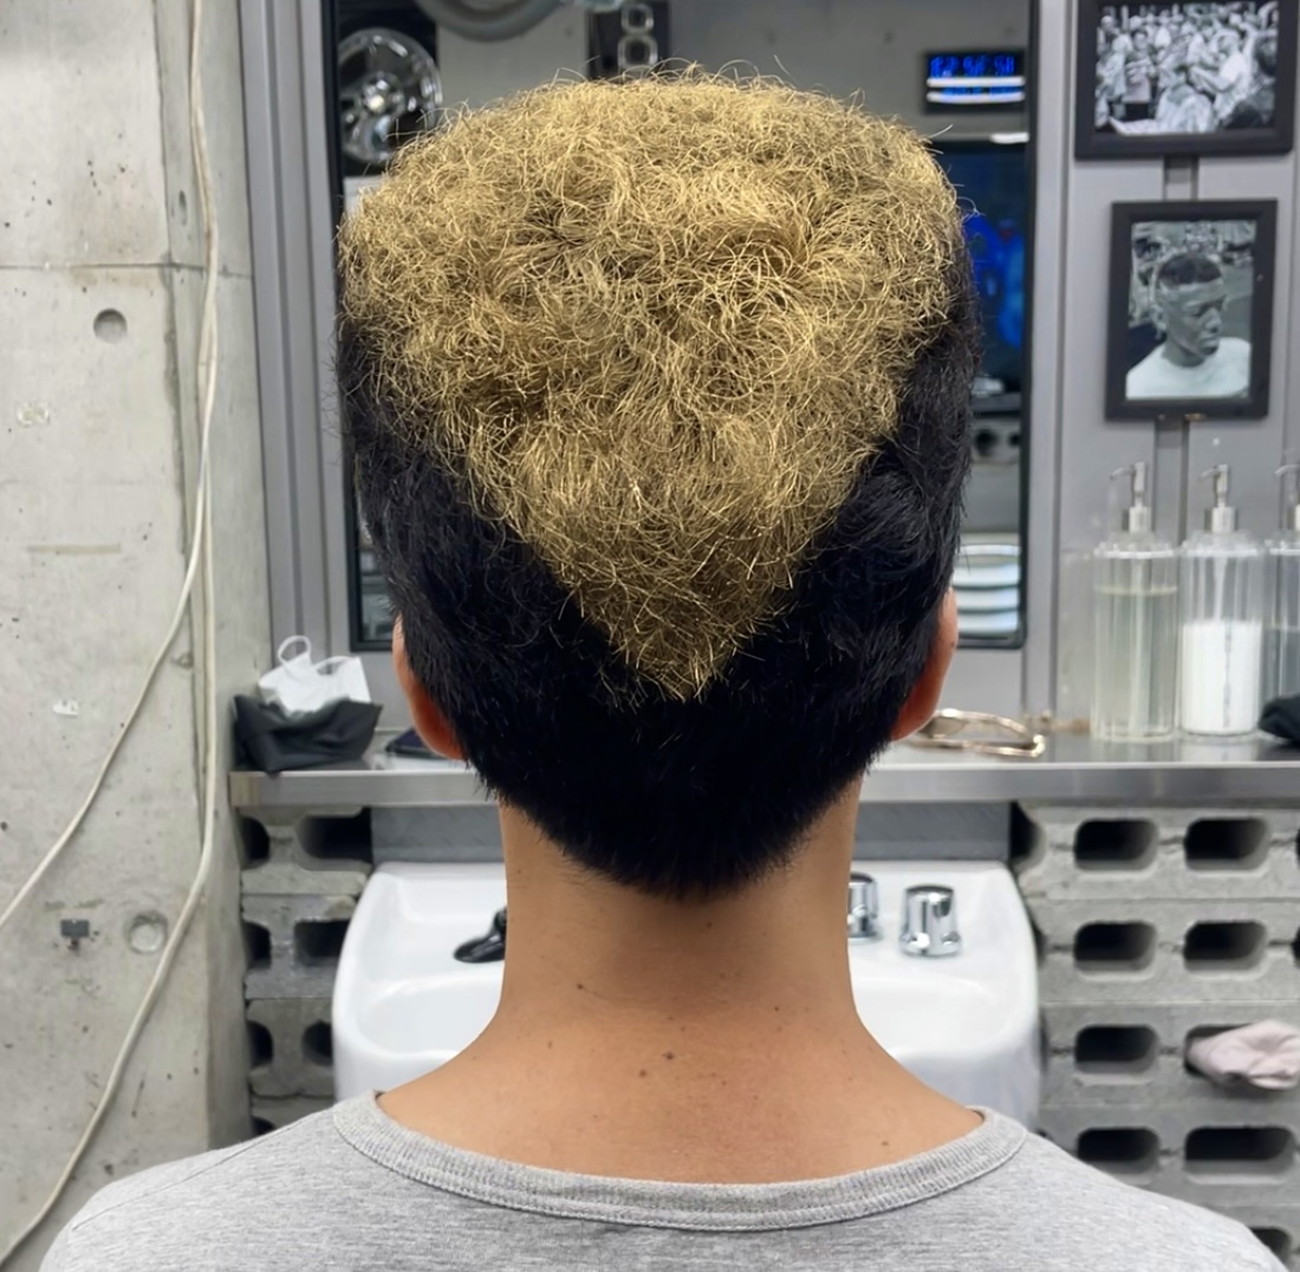 沖縄 悪そうな髪型を得意とする理容室 ディープ で金髪リーゼントに変身したでござる 行こうぜピリオドの向こうへ ロケットニュース24